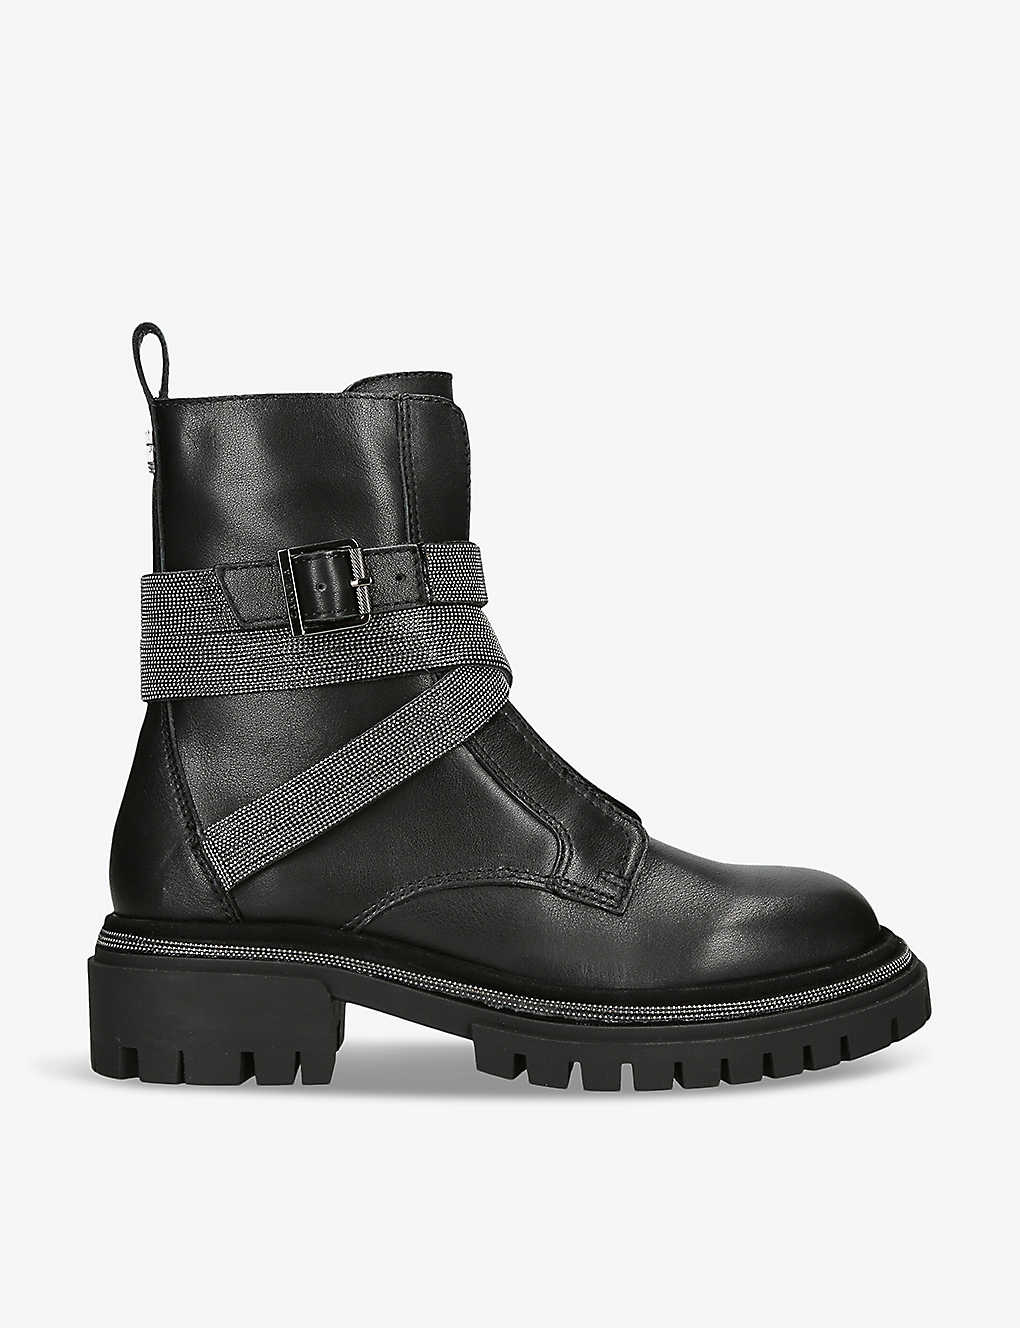 Carvela Womens Black Emblaze Buckle-embellished Leather Ankle Boots